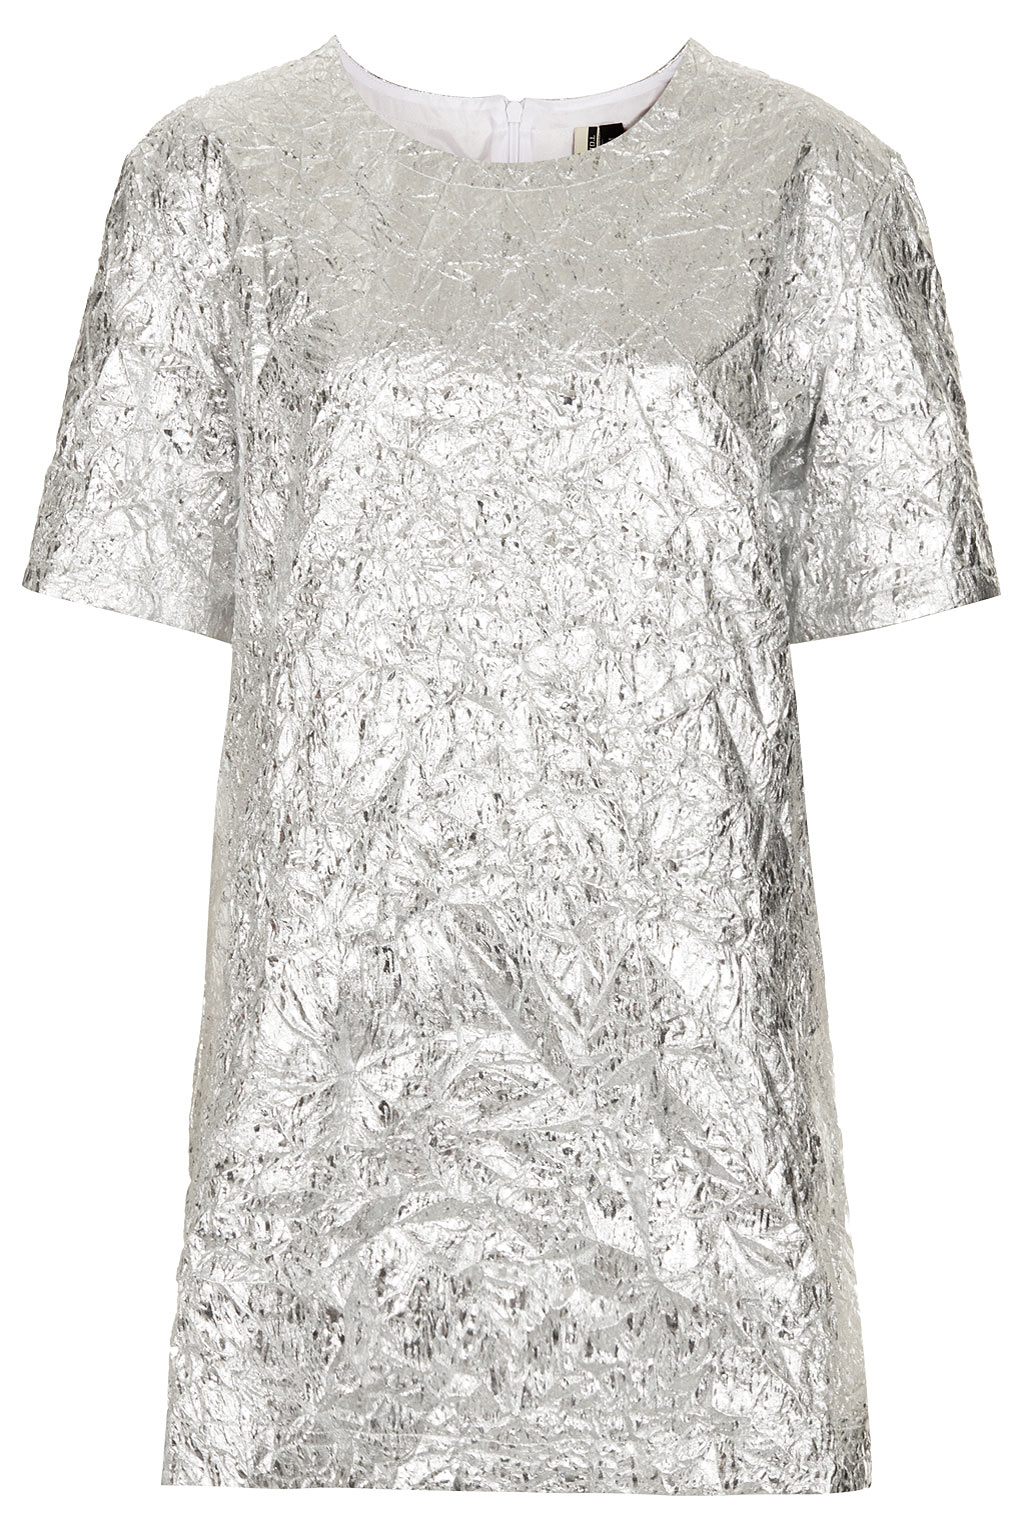 silver tshirt dress